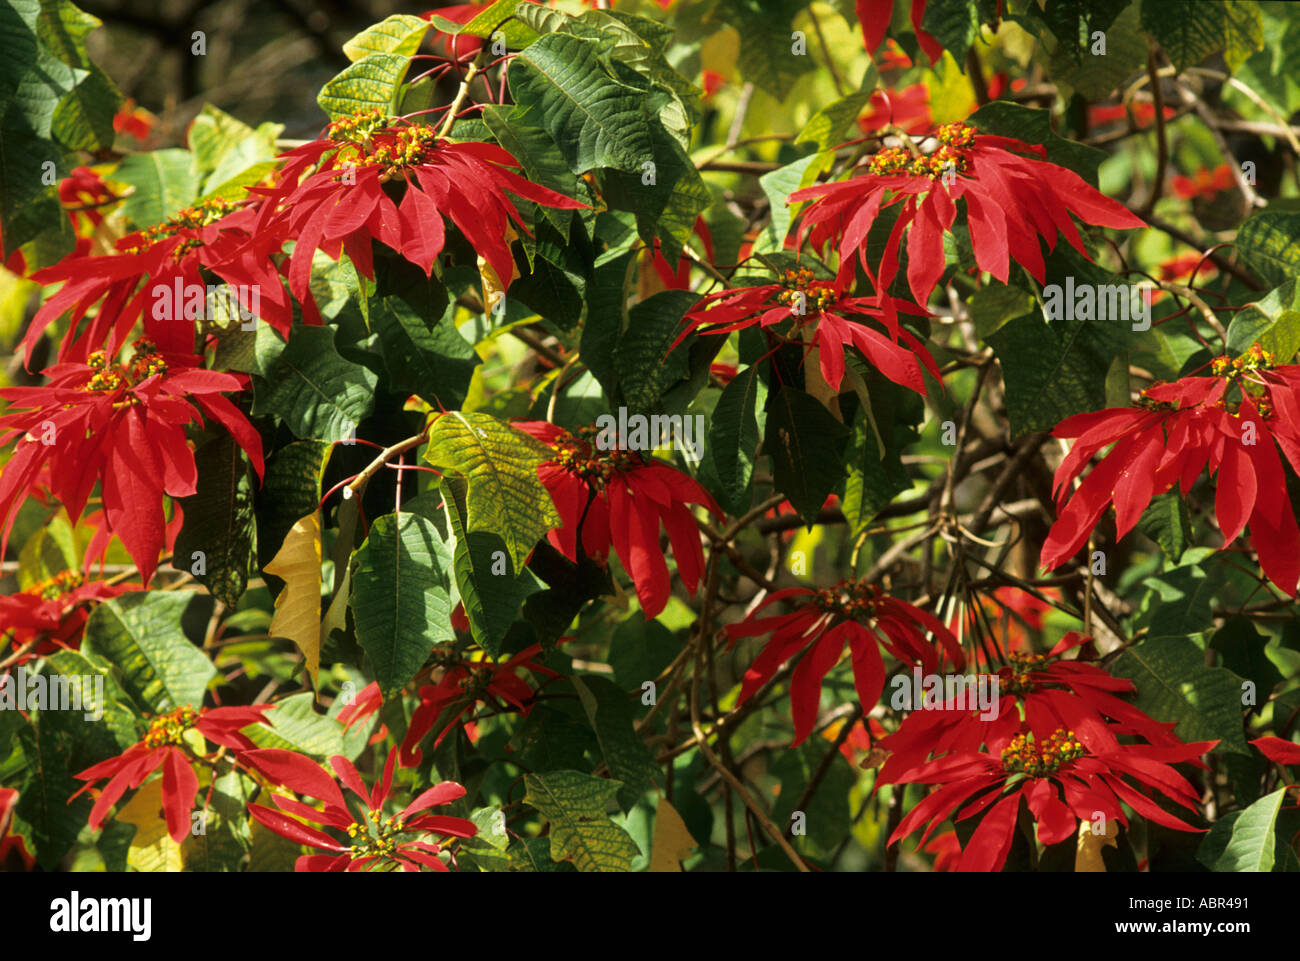 Amazonas, Brasilien. Weihnachtsstern (Weihnachtsstern) Pflanze, die in  freier Wildbahn; leuchtend rote Blüten auf grünen Busch Stockfotografie -  Alamy